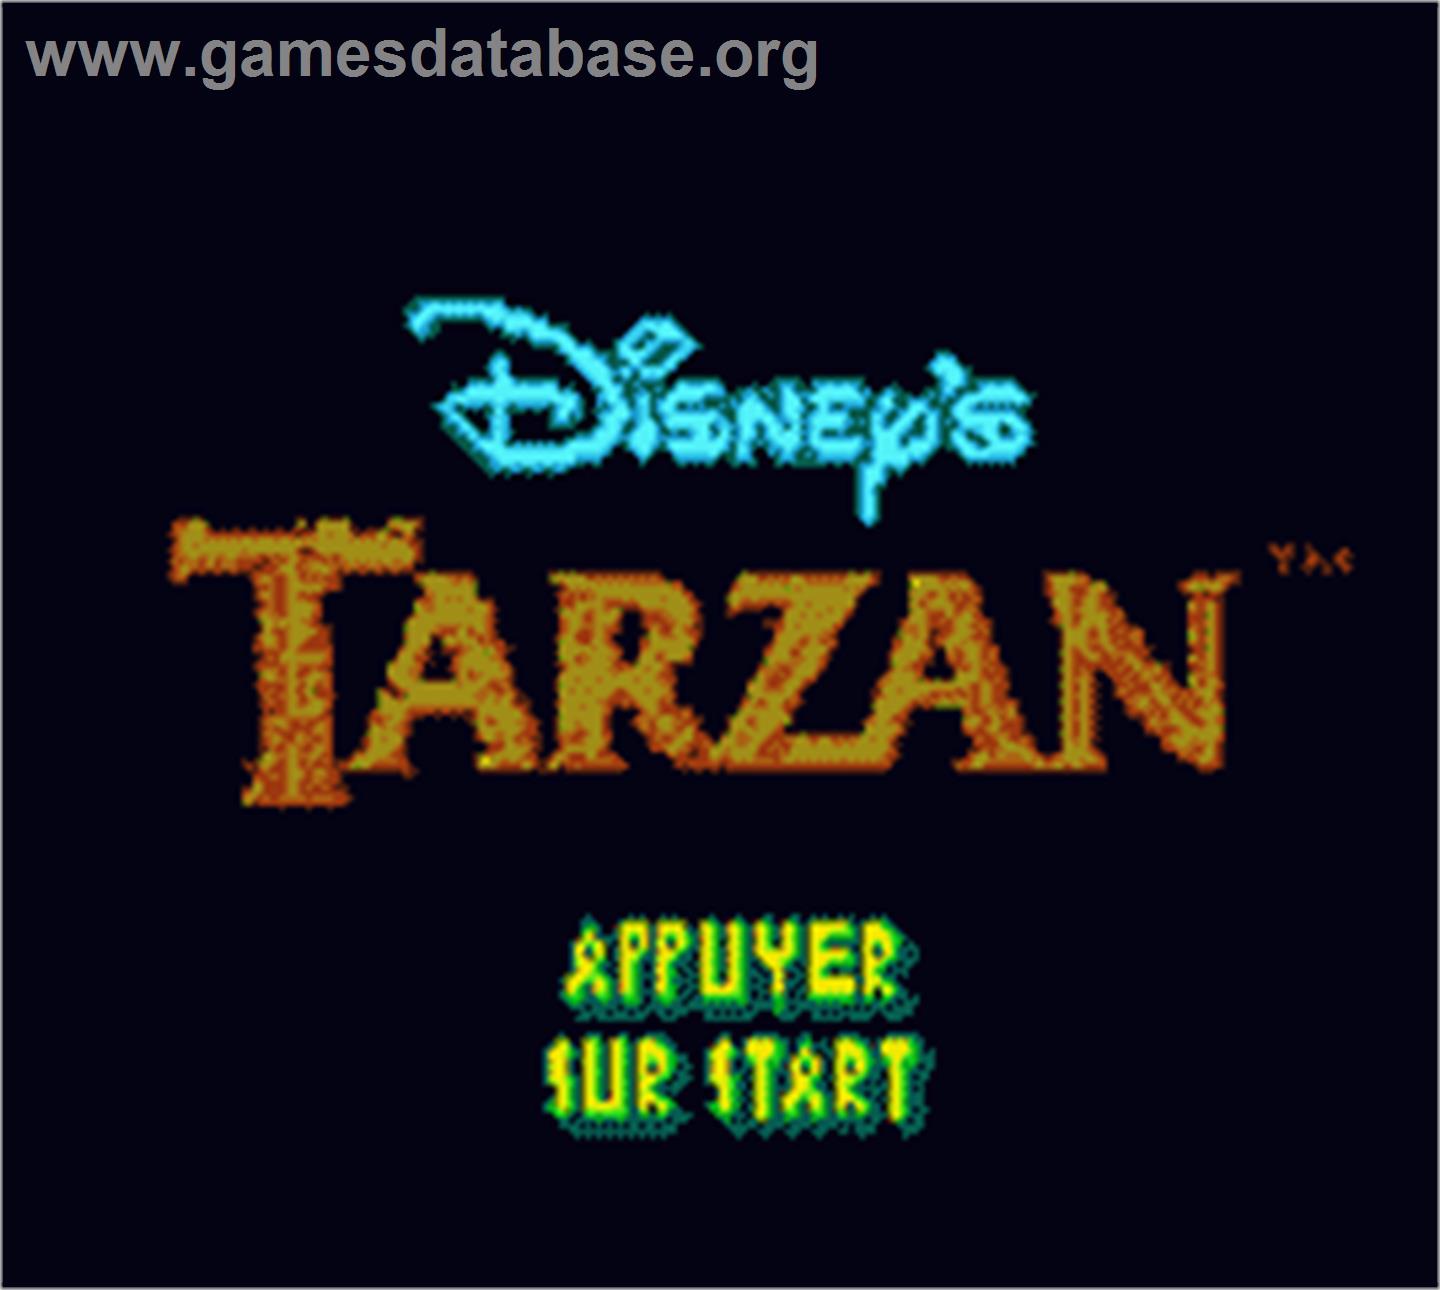 Tarzan - Nintendo Game Boy Color - Artwork - Title Screen